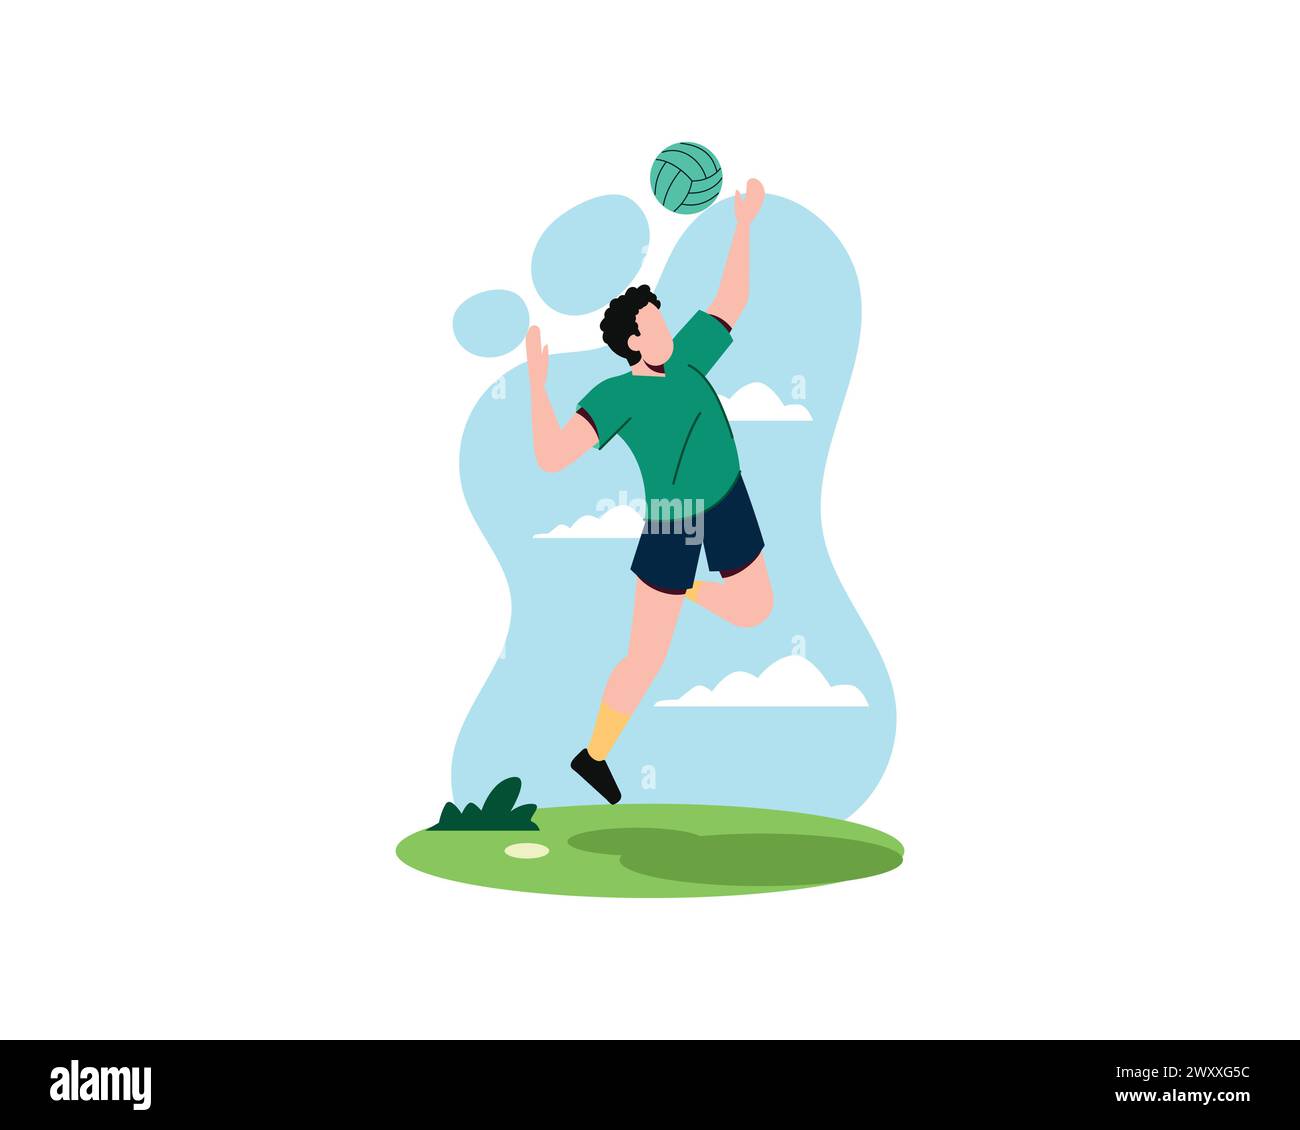 Ein junger Mann spielt Volleyball auf dem Feld. Der aktive Basketballspieler springt und schlägt den Ball. Sport und Freizeit Design Konzept Vektor Illustration. Stock Vektor